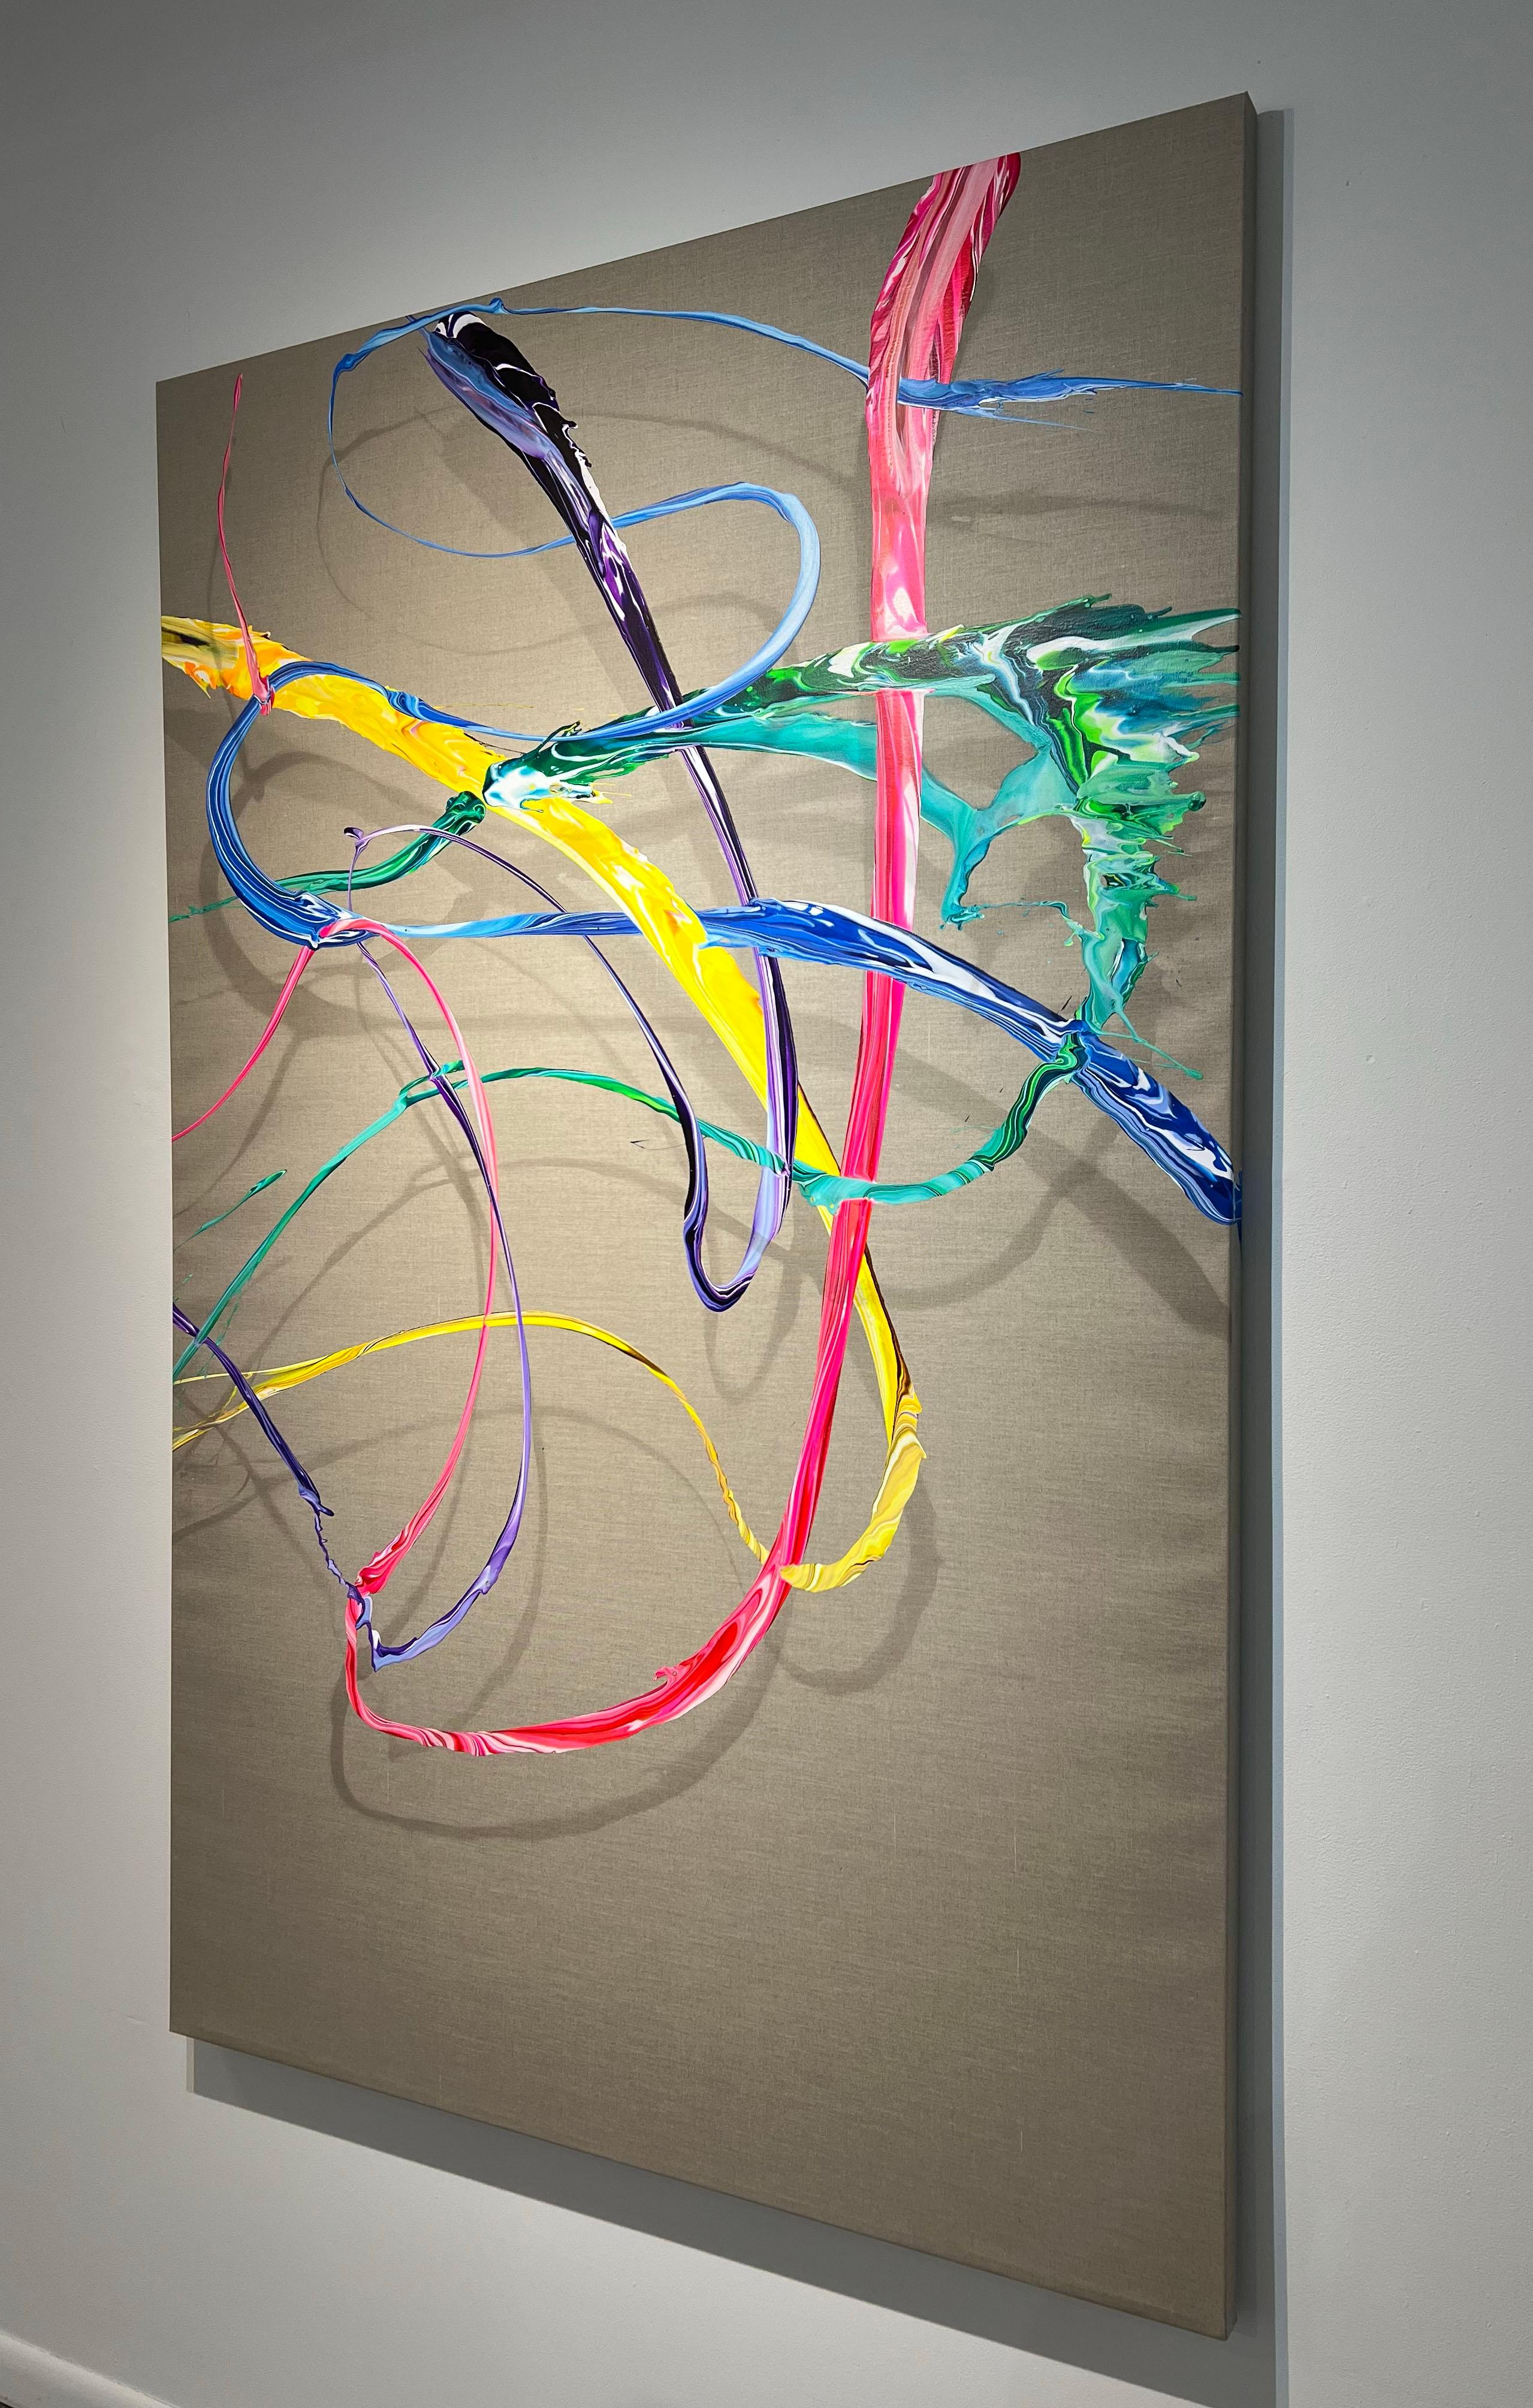 AV 888 – Eine fließende Abstraktion in Lila, Rosa, Gelb, Blau und Grün (Braun), Interior Painting, von Alex Voinea